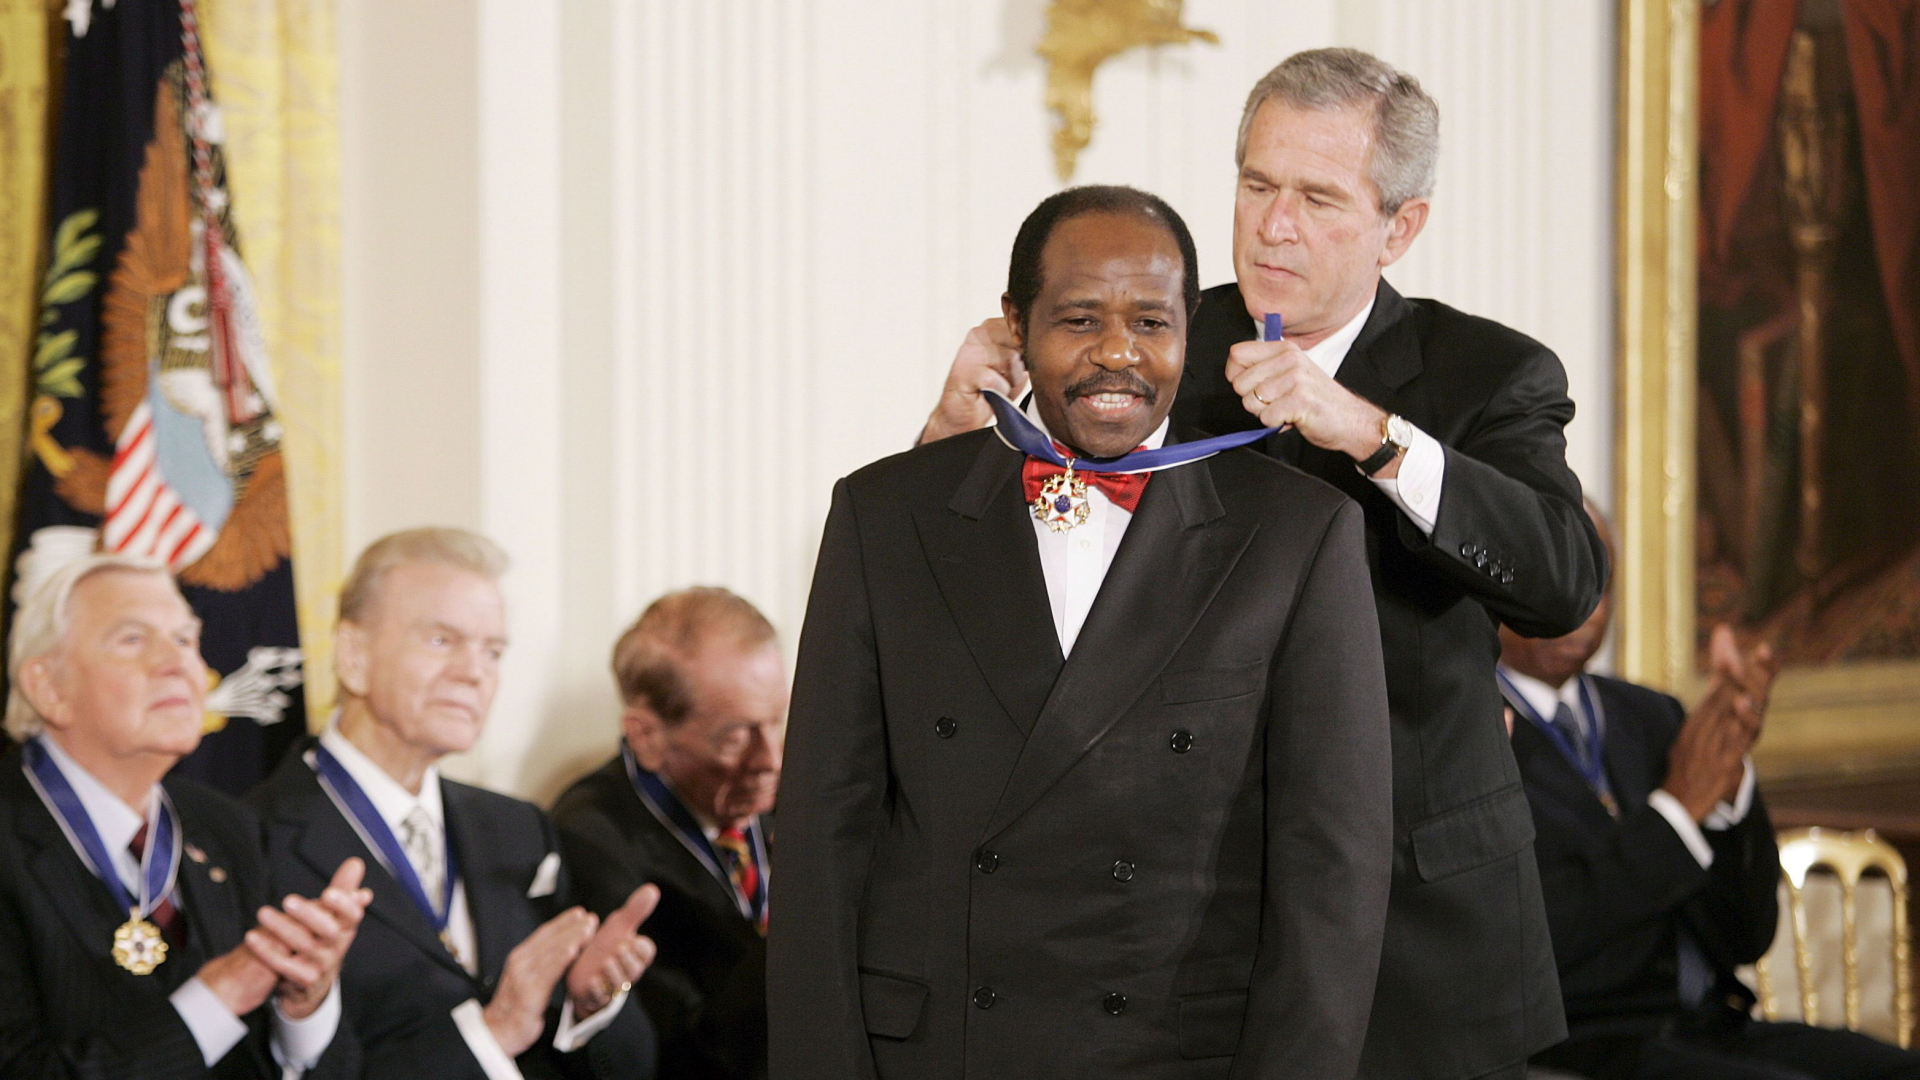 Paul Rusesabagina wird vom damaligen US-Präsidenten George W. Bush mit der Freiheitsmedaille ausgezeichnet. | SHAWN THEW/EPA-EFE/Shutterstock